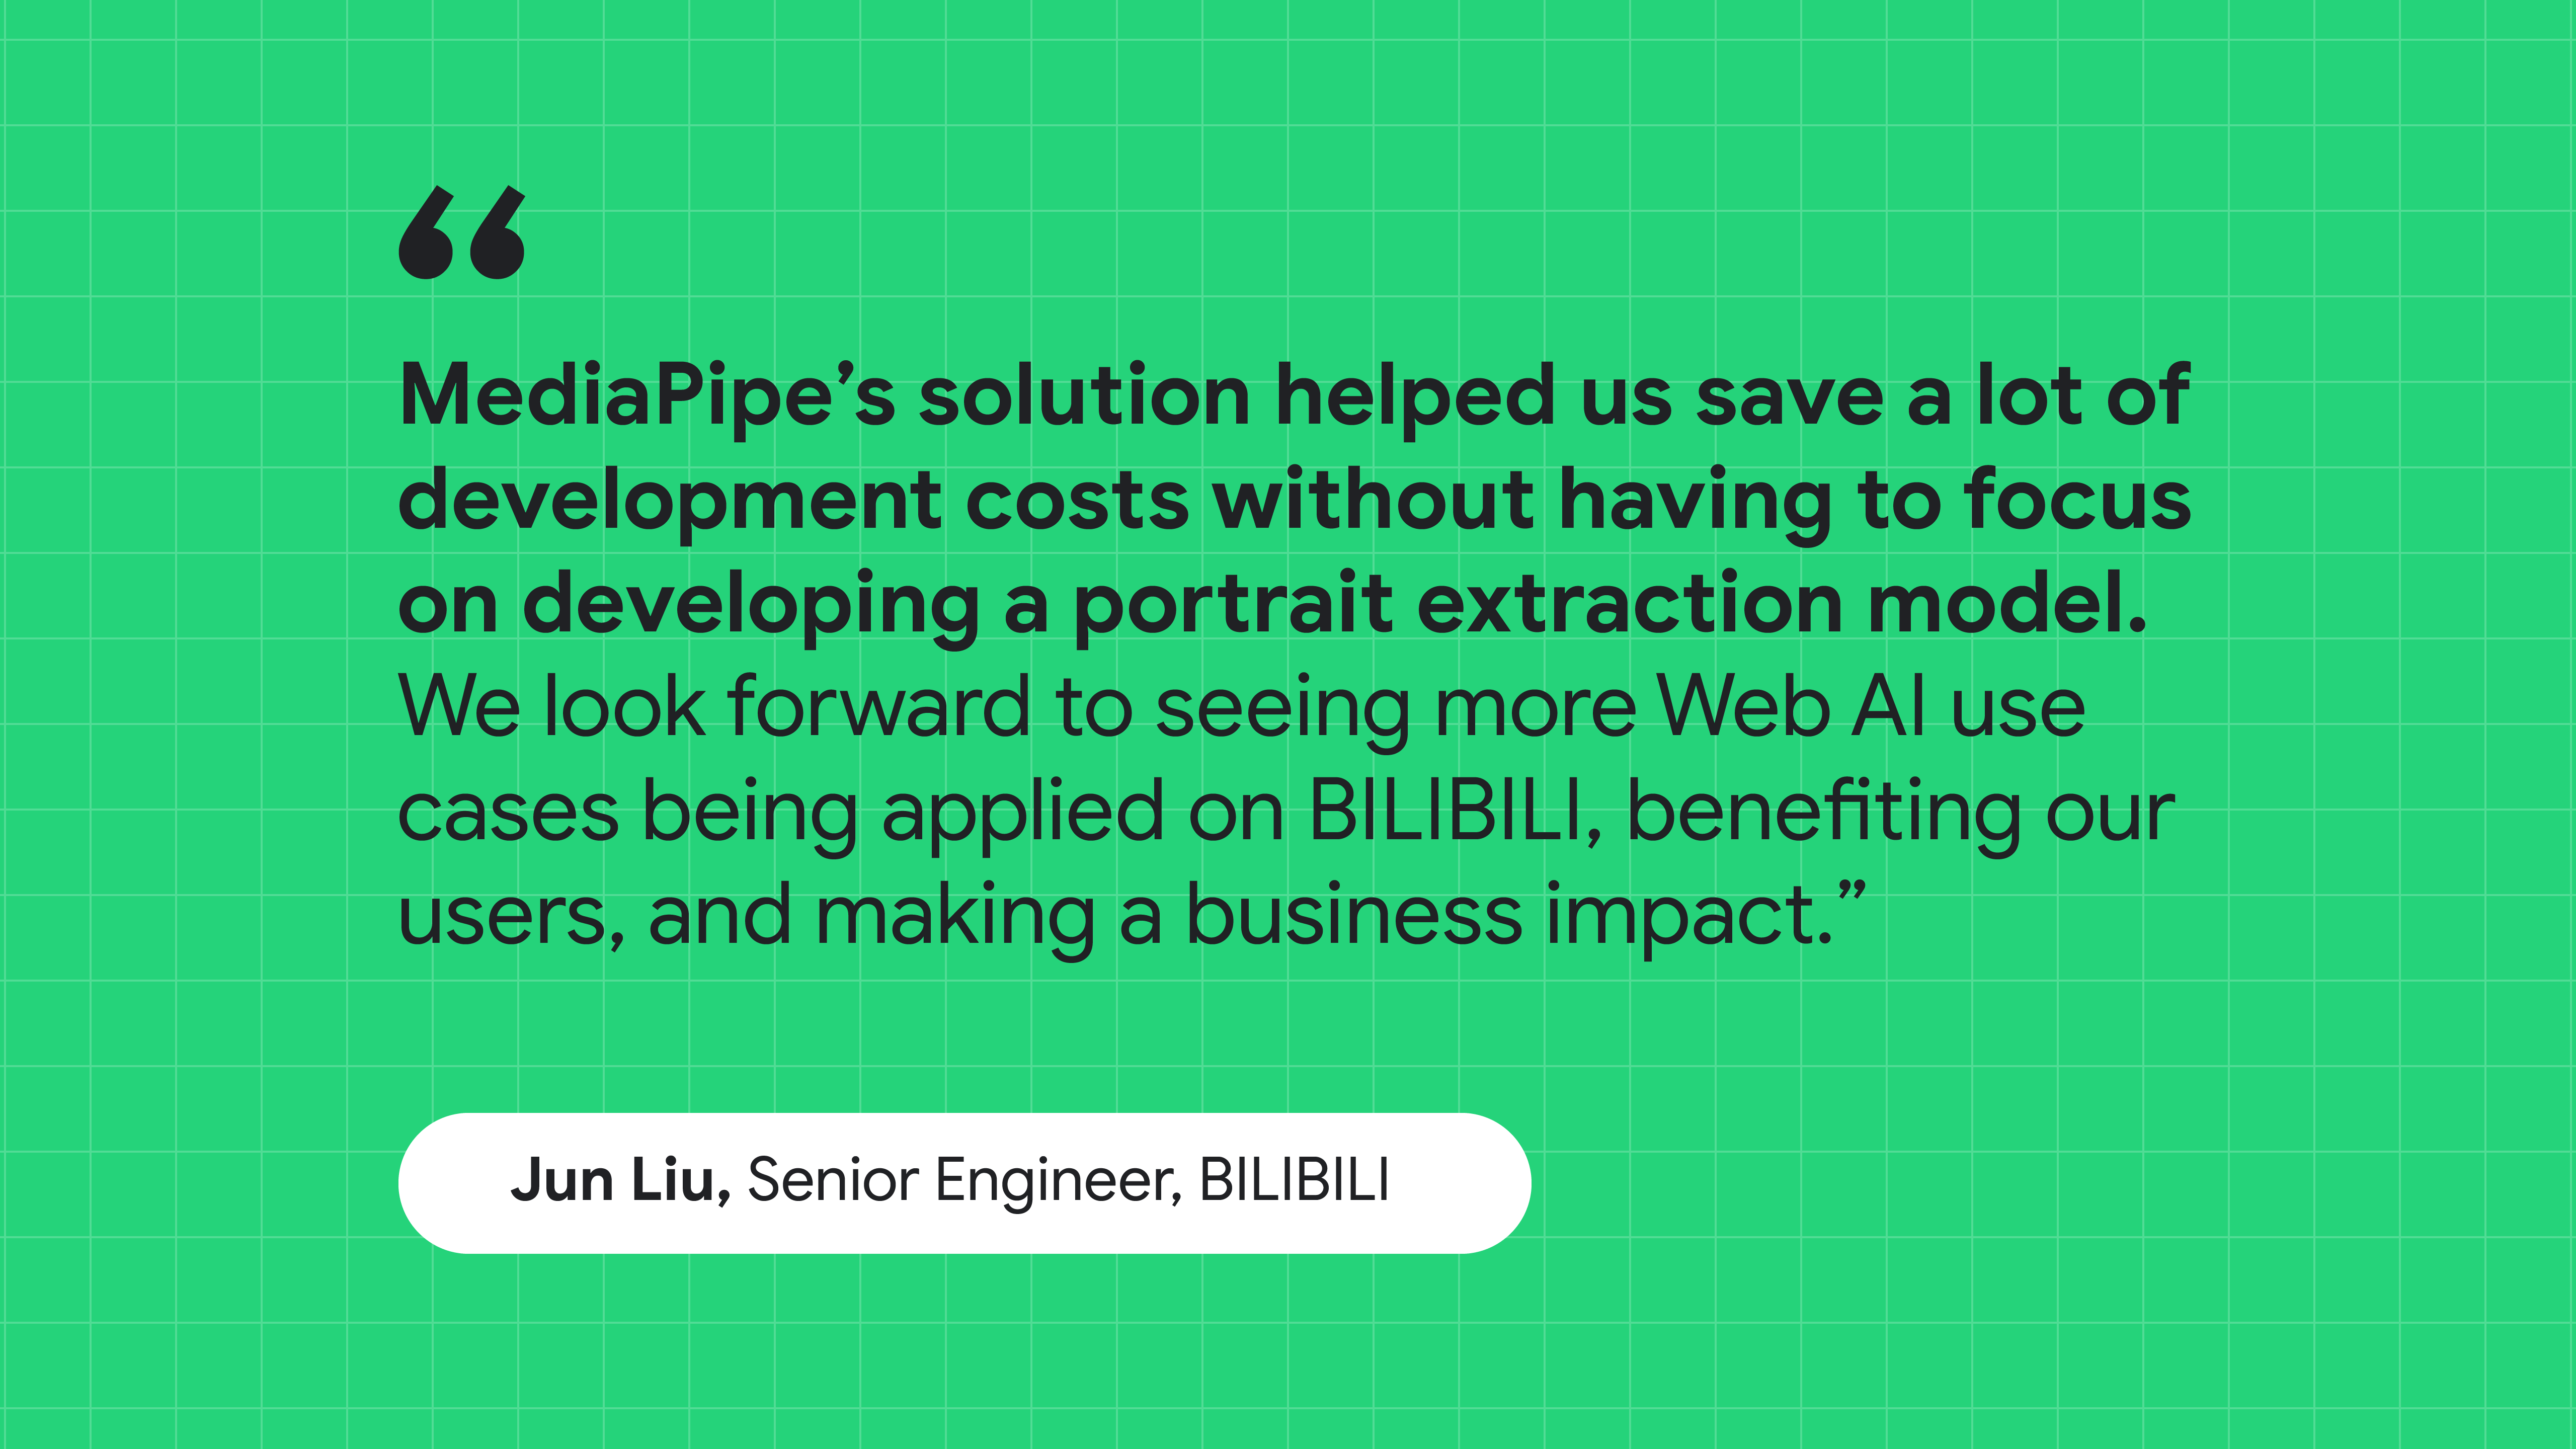 اقتباس من &quot;جون ليو&quot;، كبير المهندسين في BILIBILI: ساعد حل MediaPipe في توفير تكاليف التطوير بدون التركيز على إنشاء نموذج لاستخراج الصور العمودية.